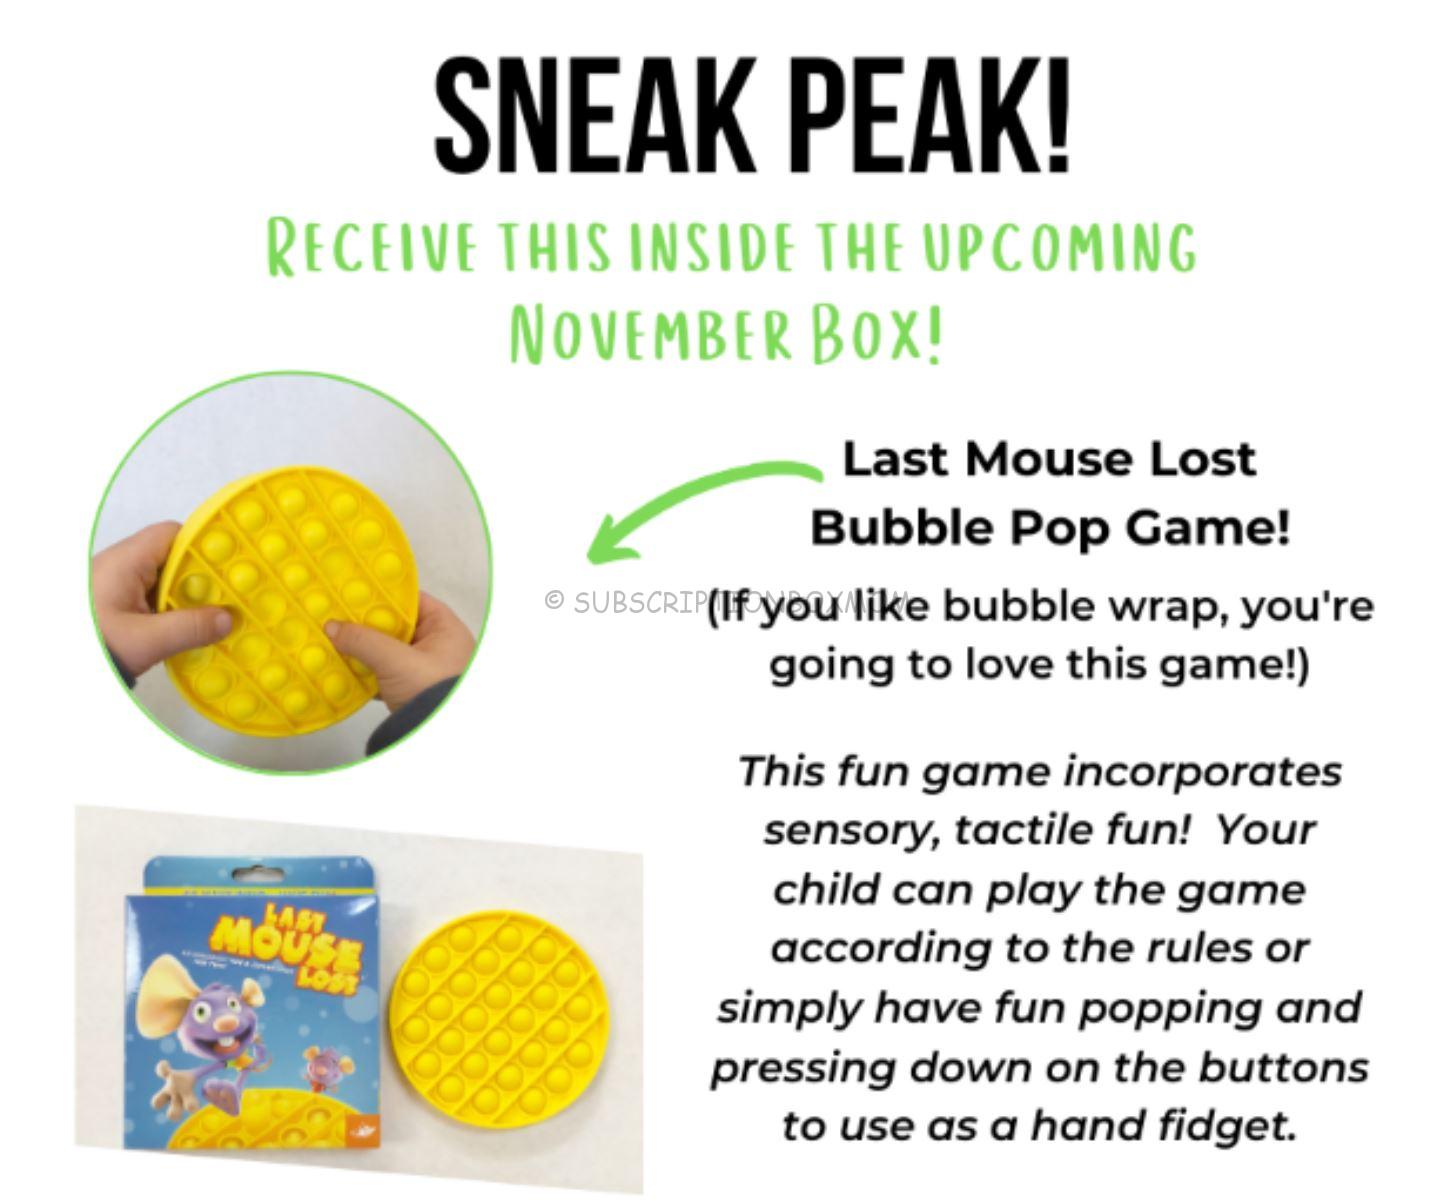 Last Mouse Lost Bubble Pop Game